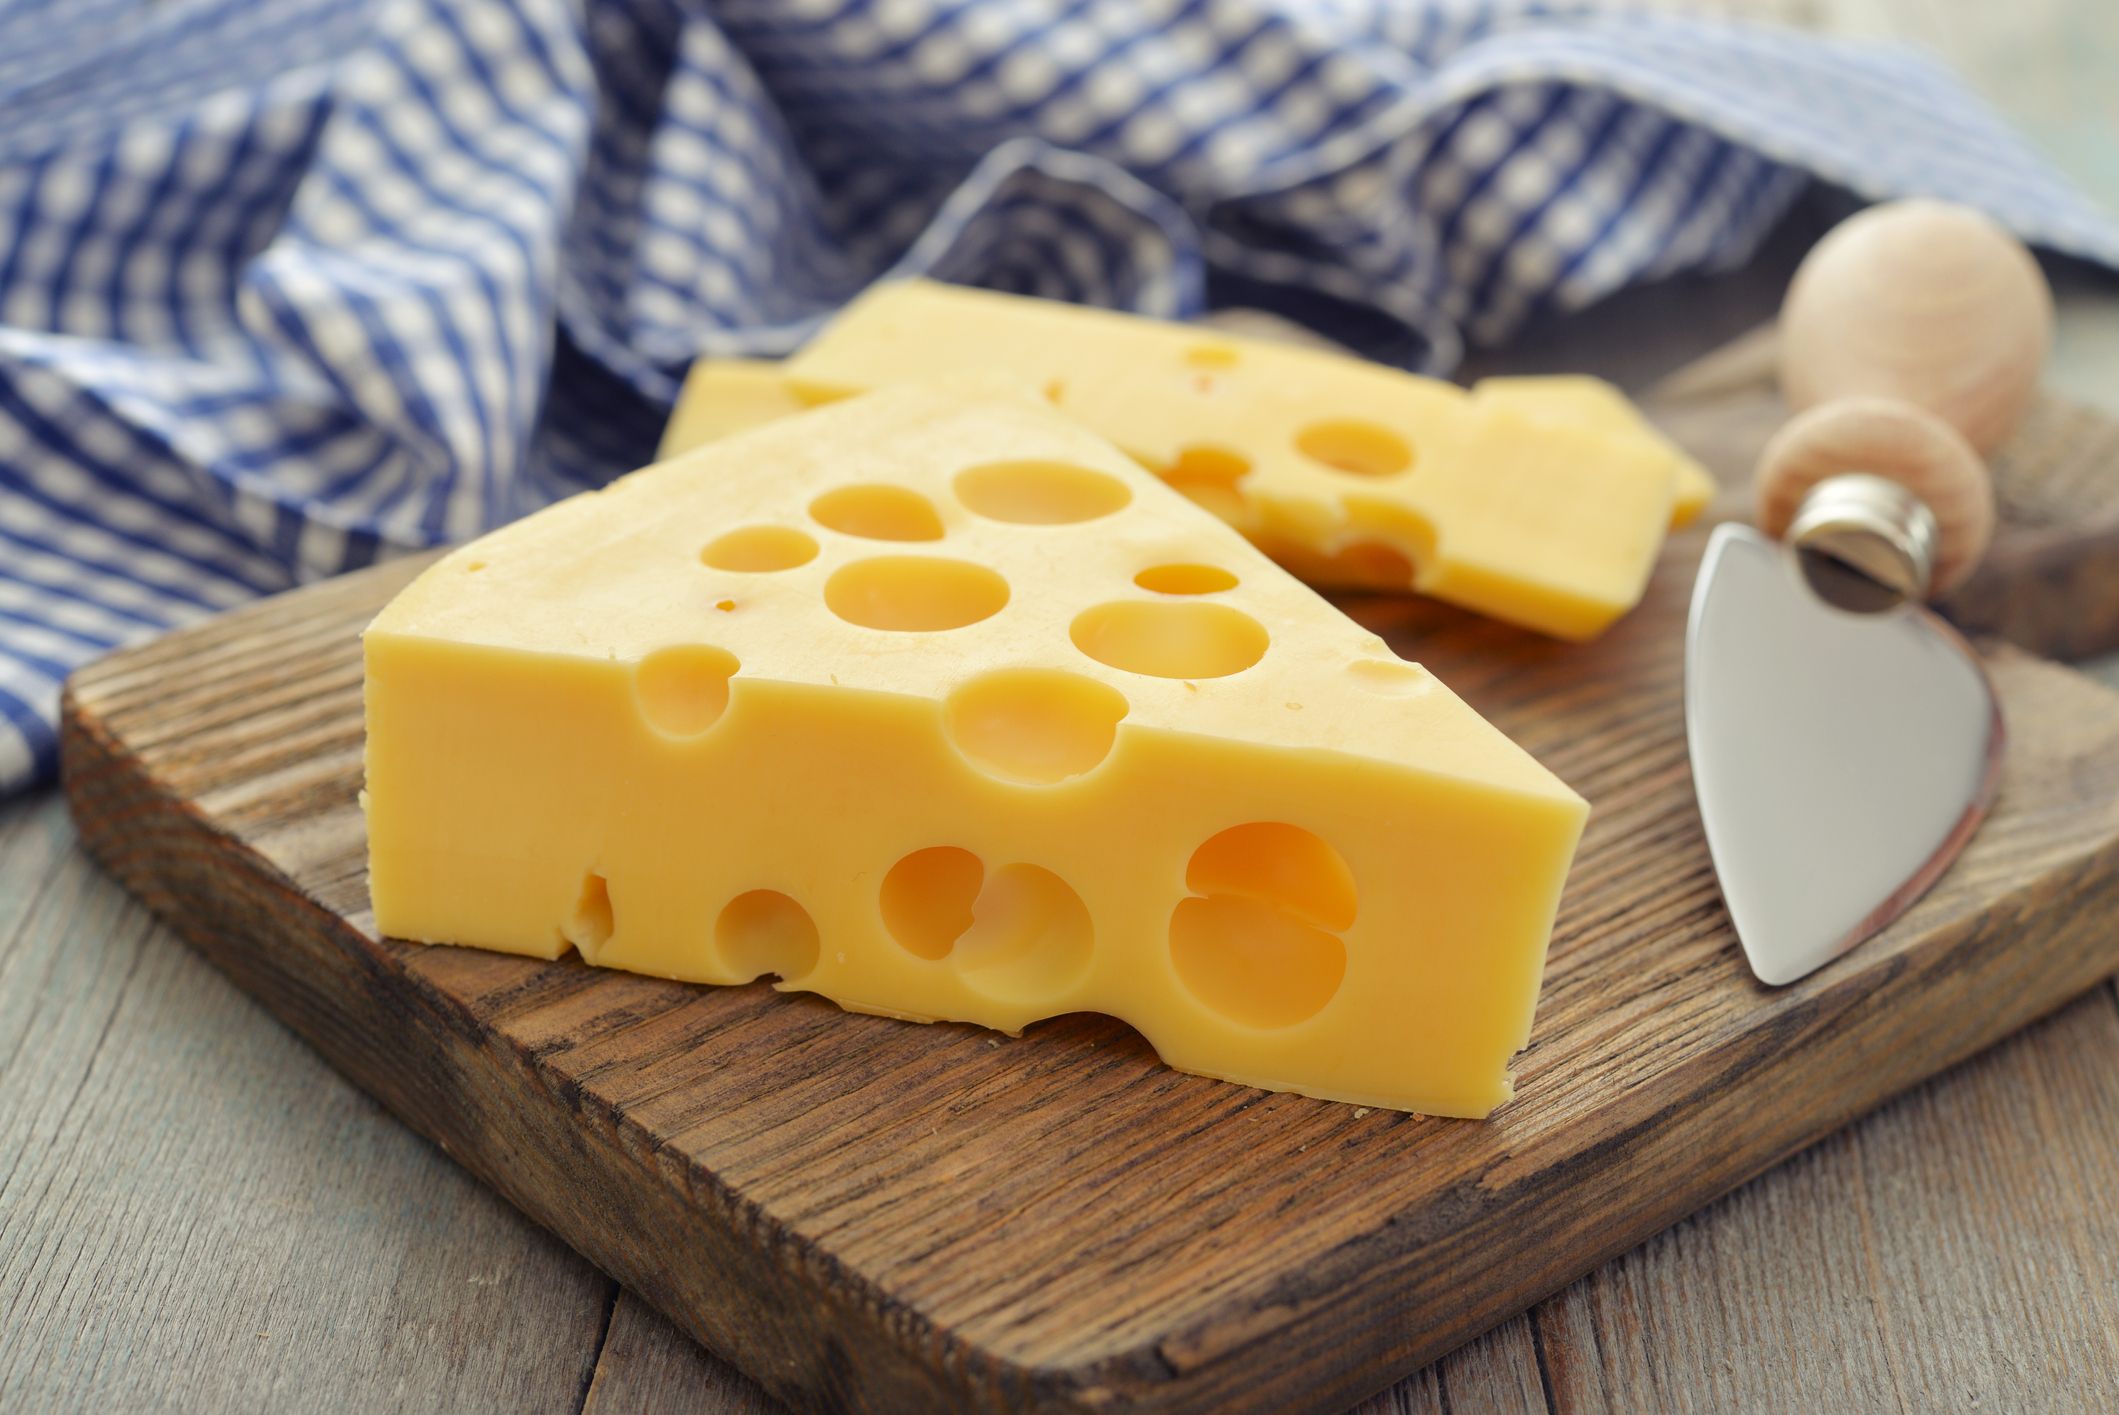 Hoe komen er gaten in een kaas?